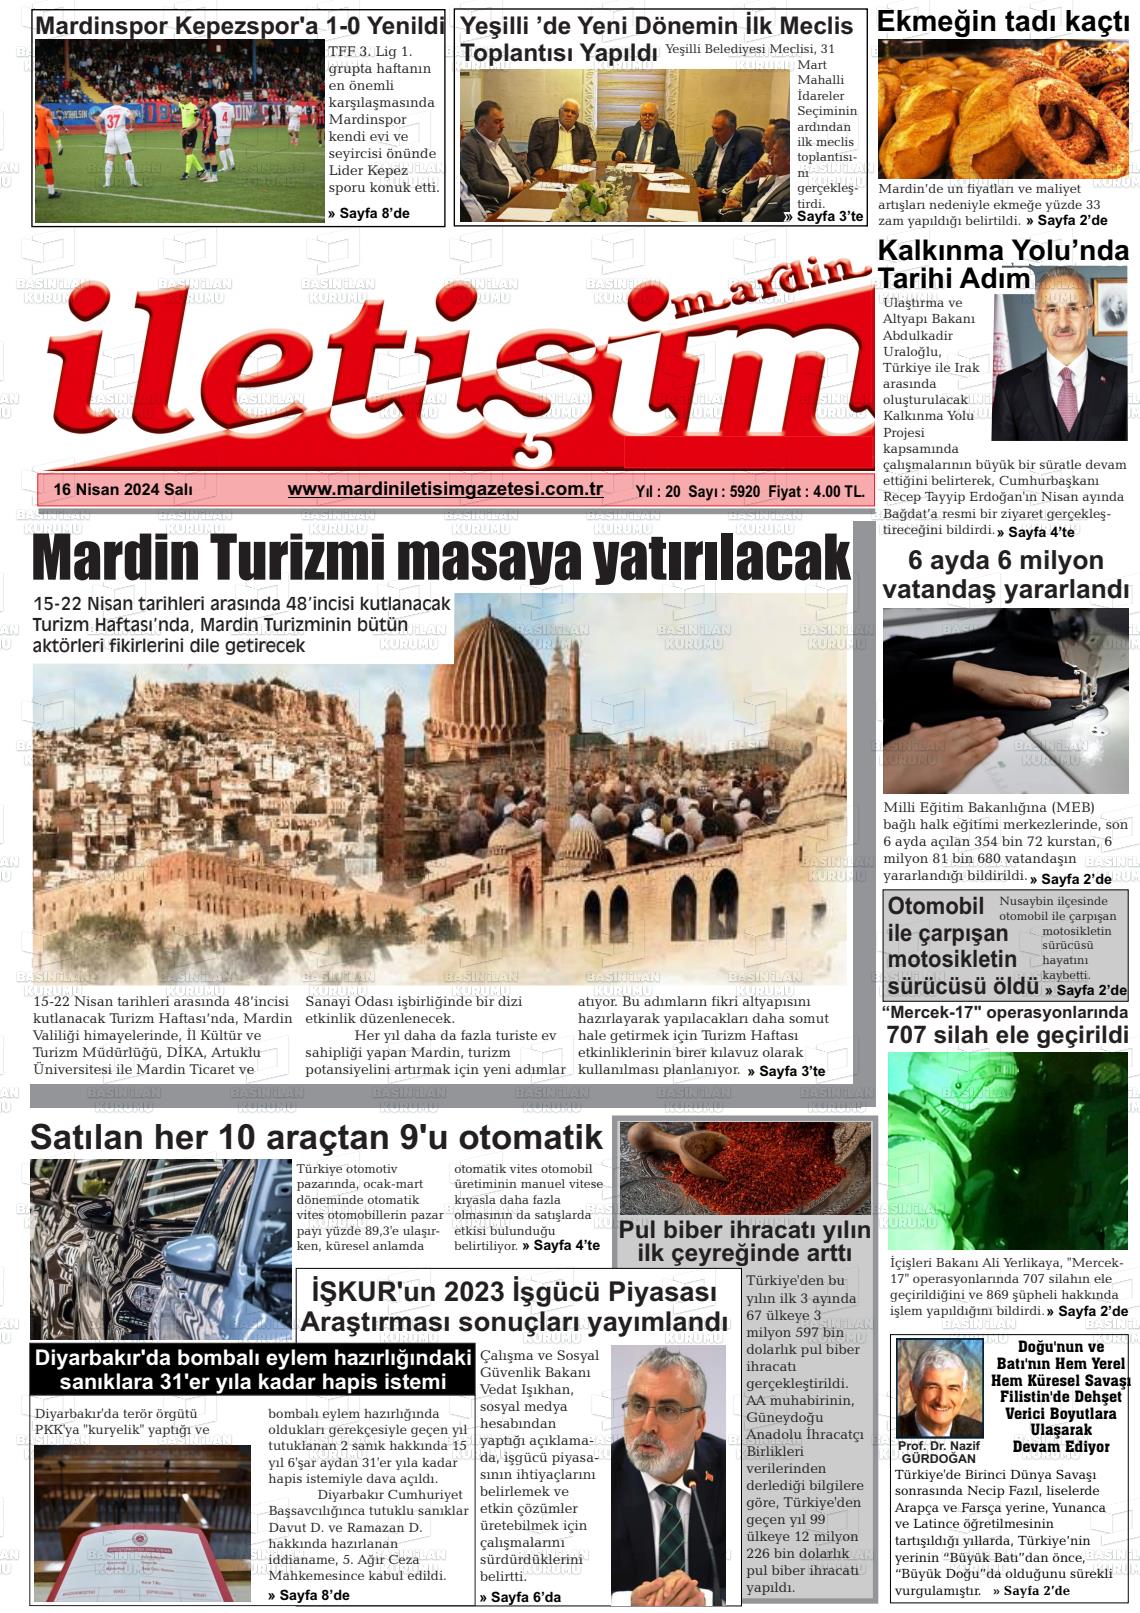 16 Nisan 2024 Mardin İletişim Gazete Manşeti